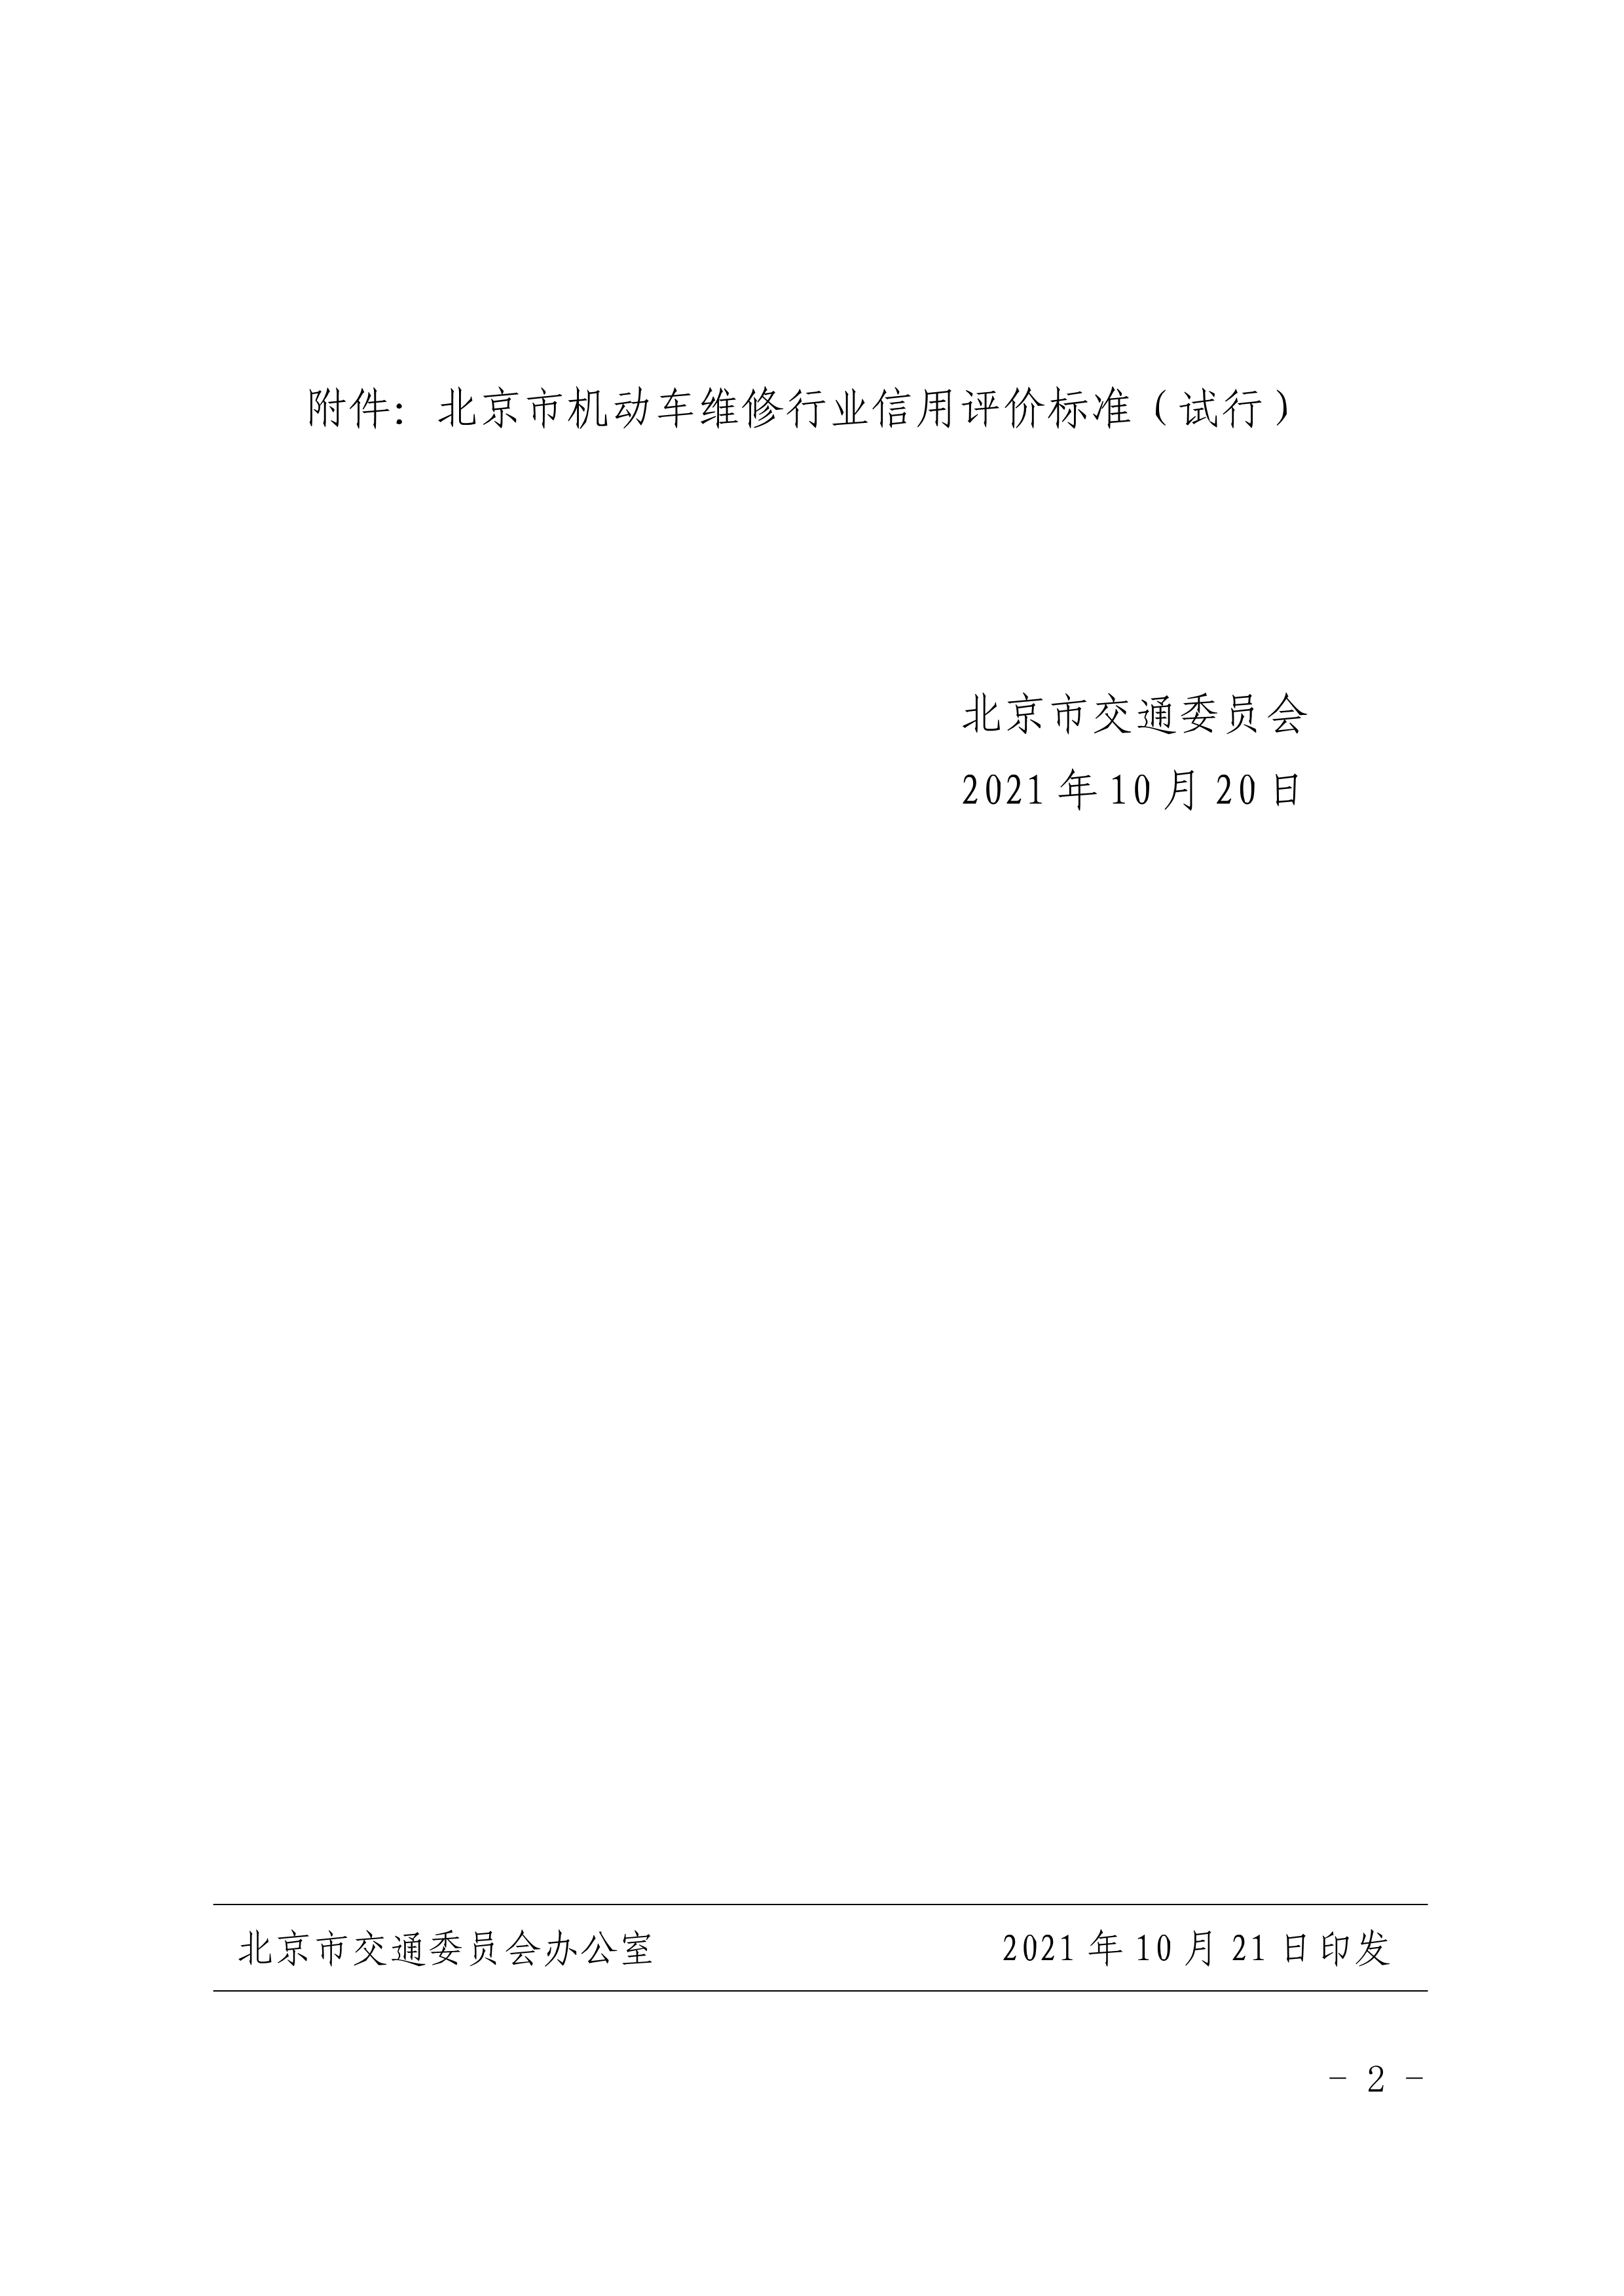 北京市交通委员会关于印发《北京市机动车 维修行业信用评价标准（试行）》的通知(图2)